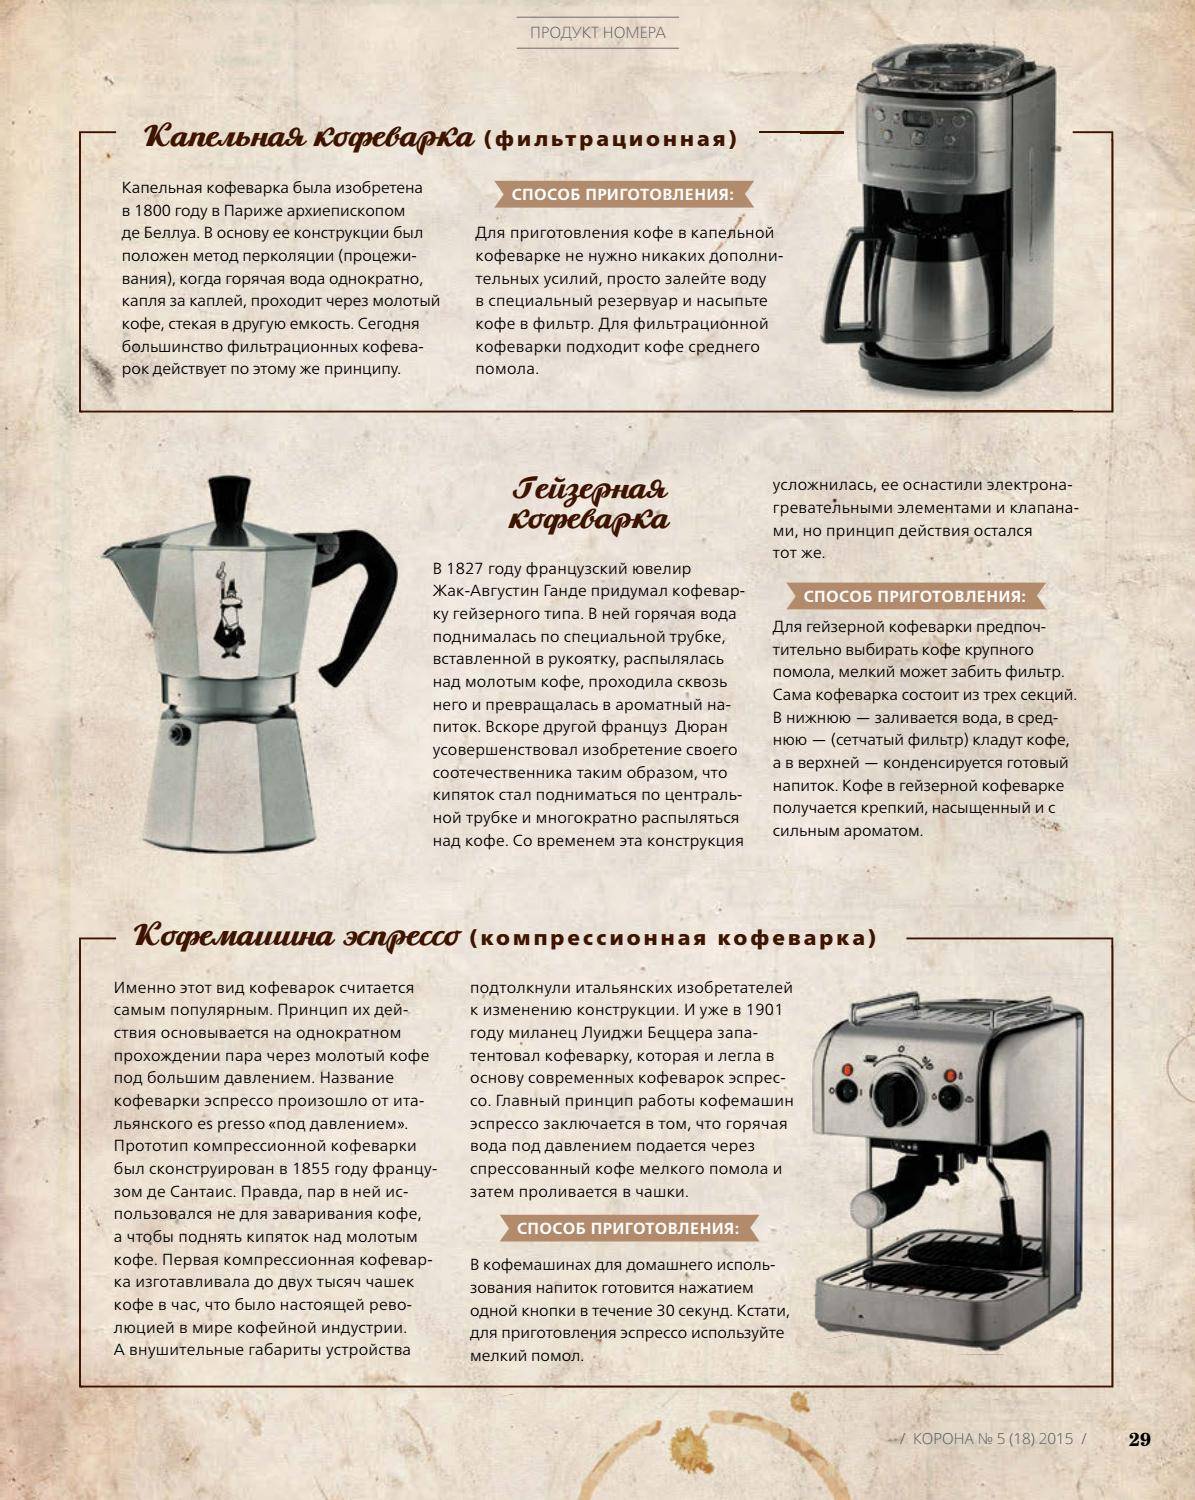 Что такое капельная кофеварка, принцип работы капельной кофеварки, как пользоваться кофеваркой капельного типа